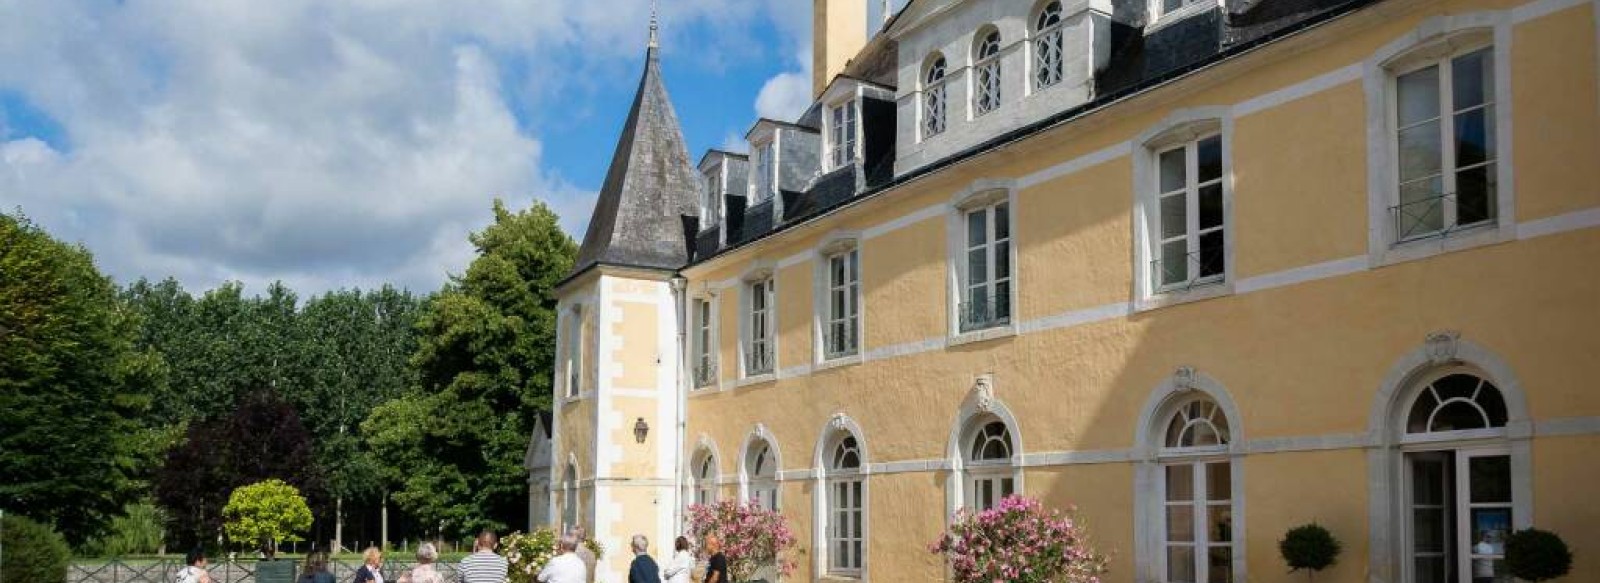 Visite du Chateau de Dobert